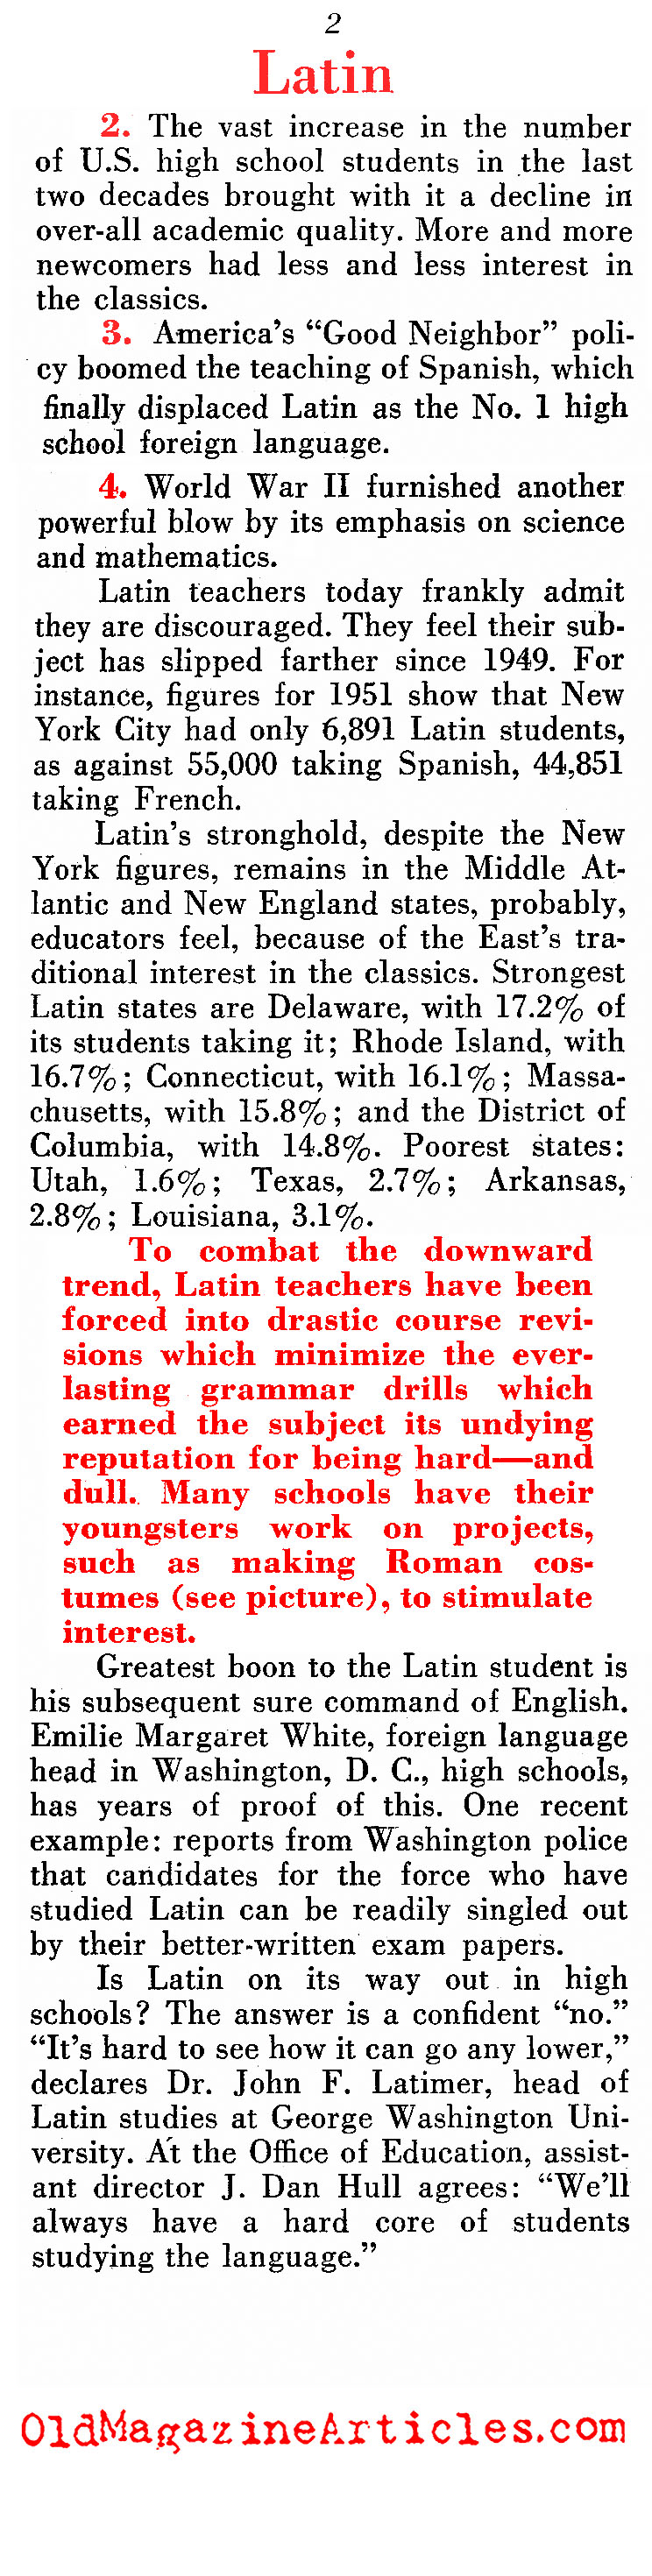 Whither Latin? (Pathfinder Magazine, 1952)